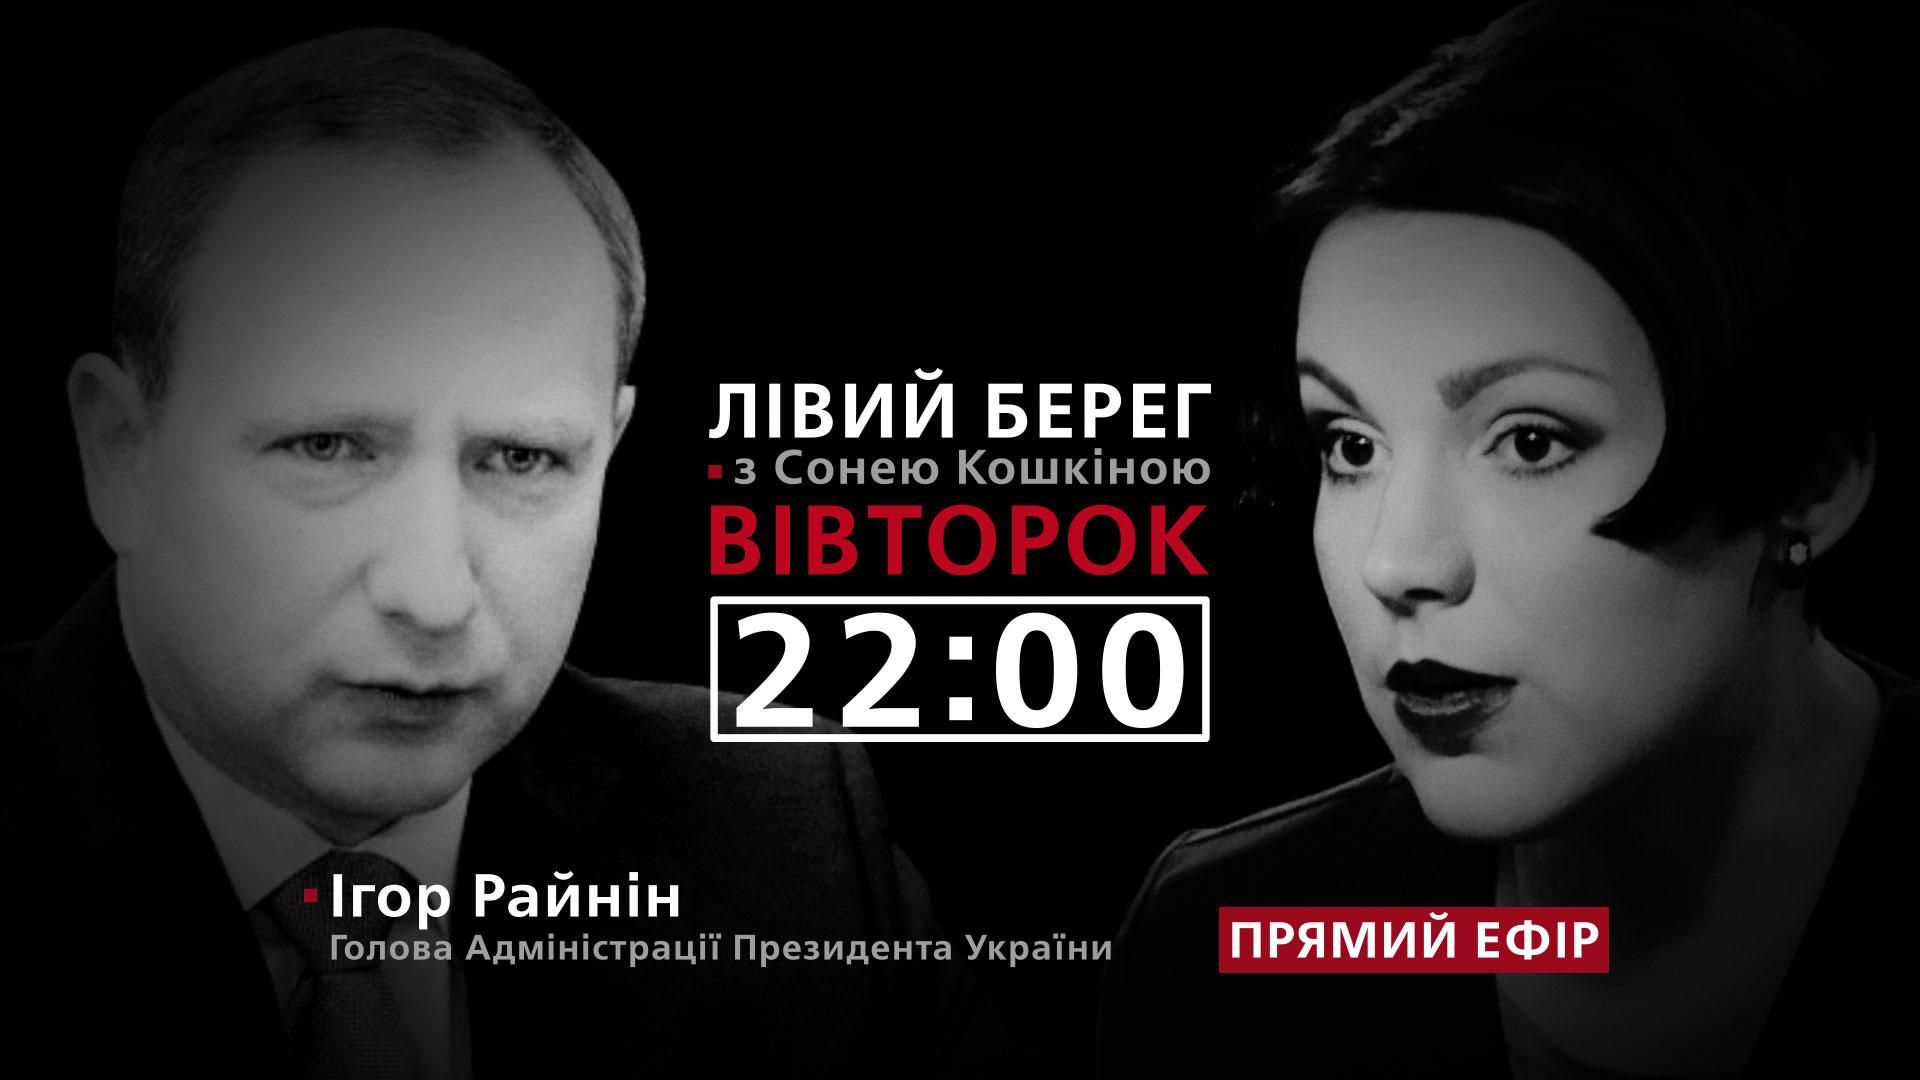 Глава АП об отношениях с Порошенко и собственных амбициях, – смотрите в программе "Левый берег"